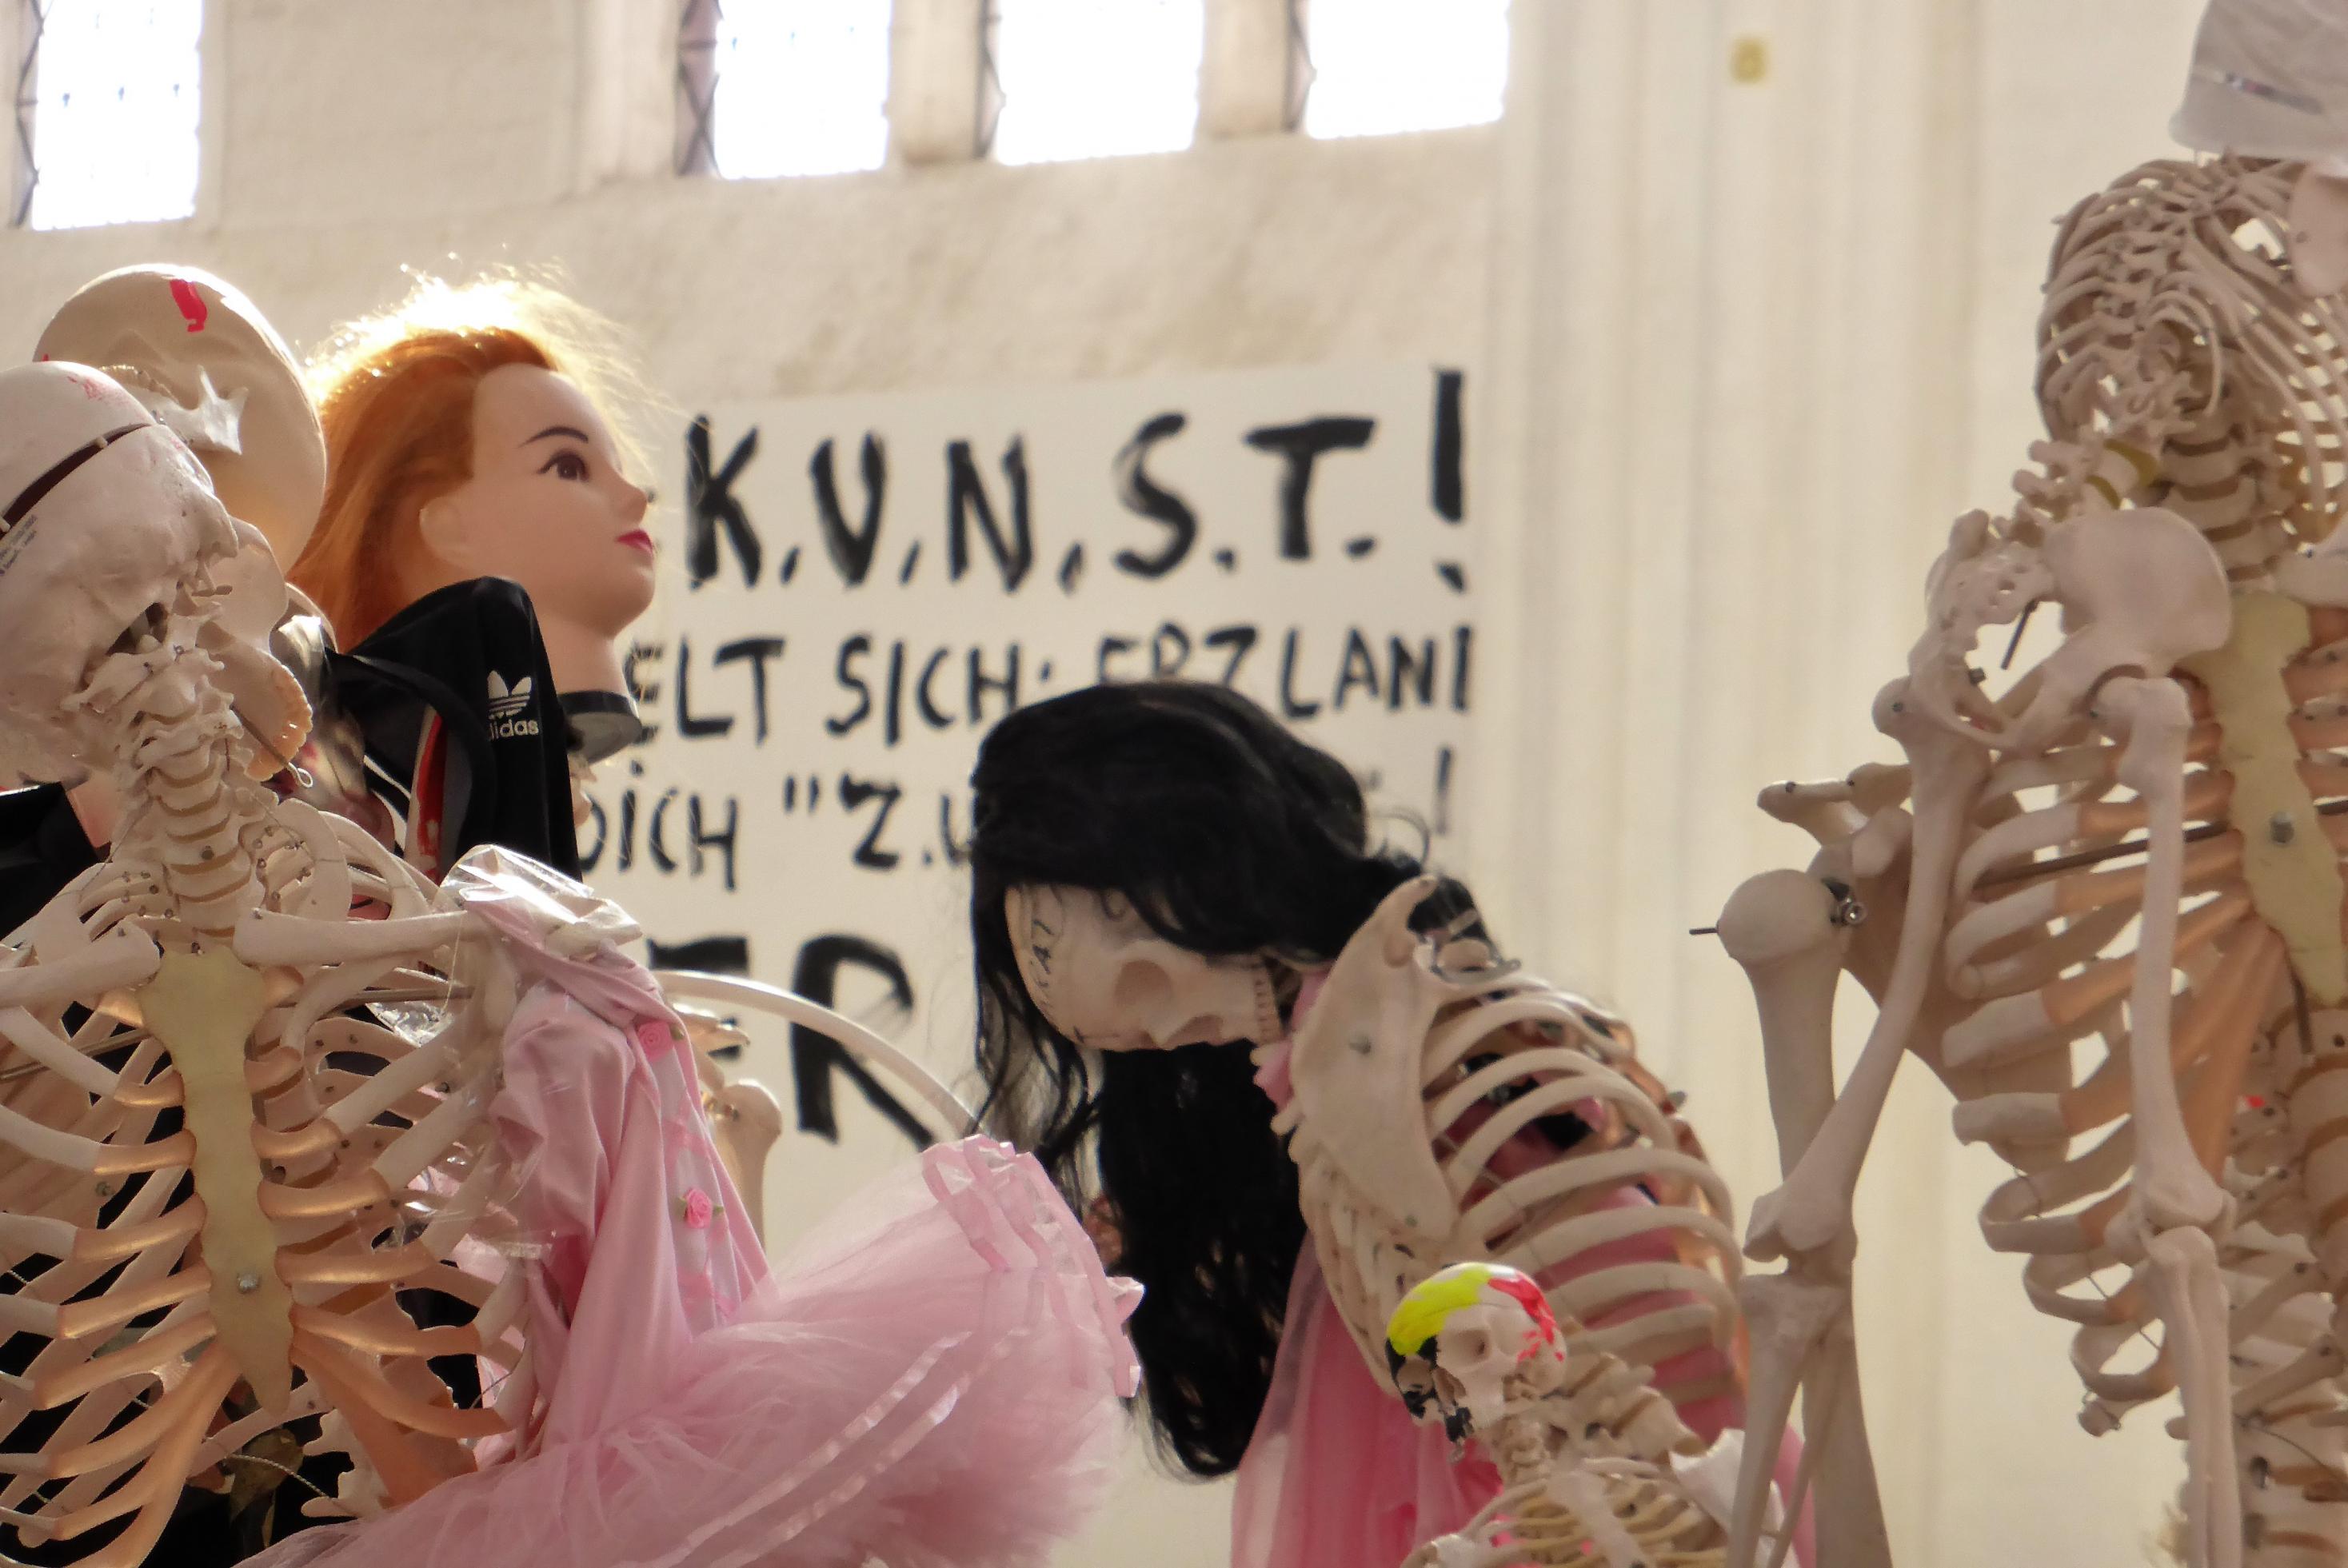 Detail der Meese-Installation: Puppenartig verfremdete Skelette stehen vor einem Wandplakat mit der Aufschrift KUNST!